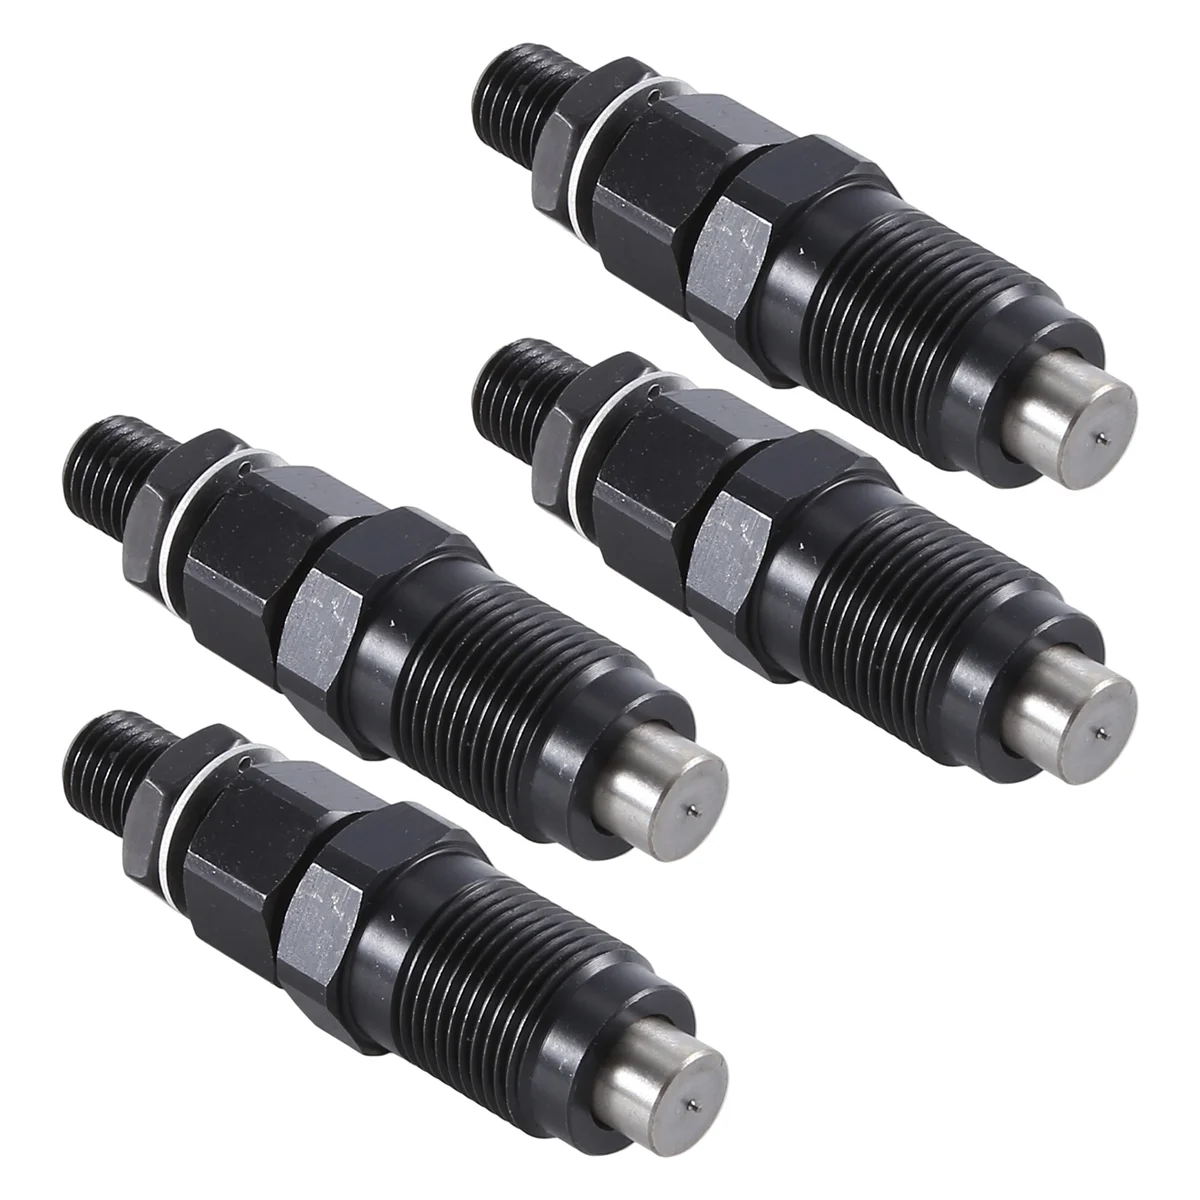 

Fuel Injector Nozzle for Nissan Terrano Urvan Patrol D21 2.3 2.5 2.7 1986-2000 16620-43G02 093400-6340 105007-1130